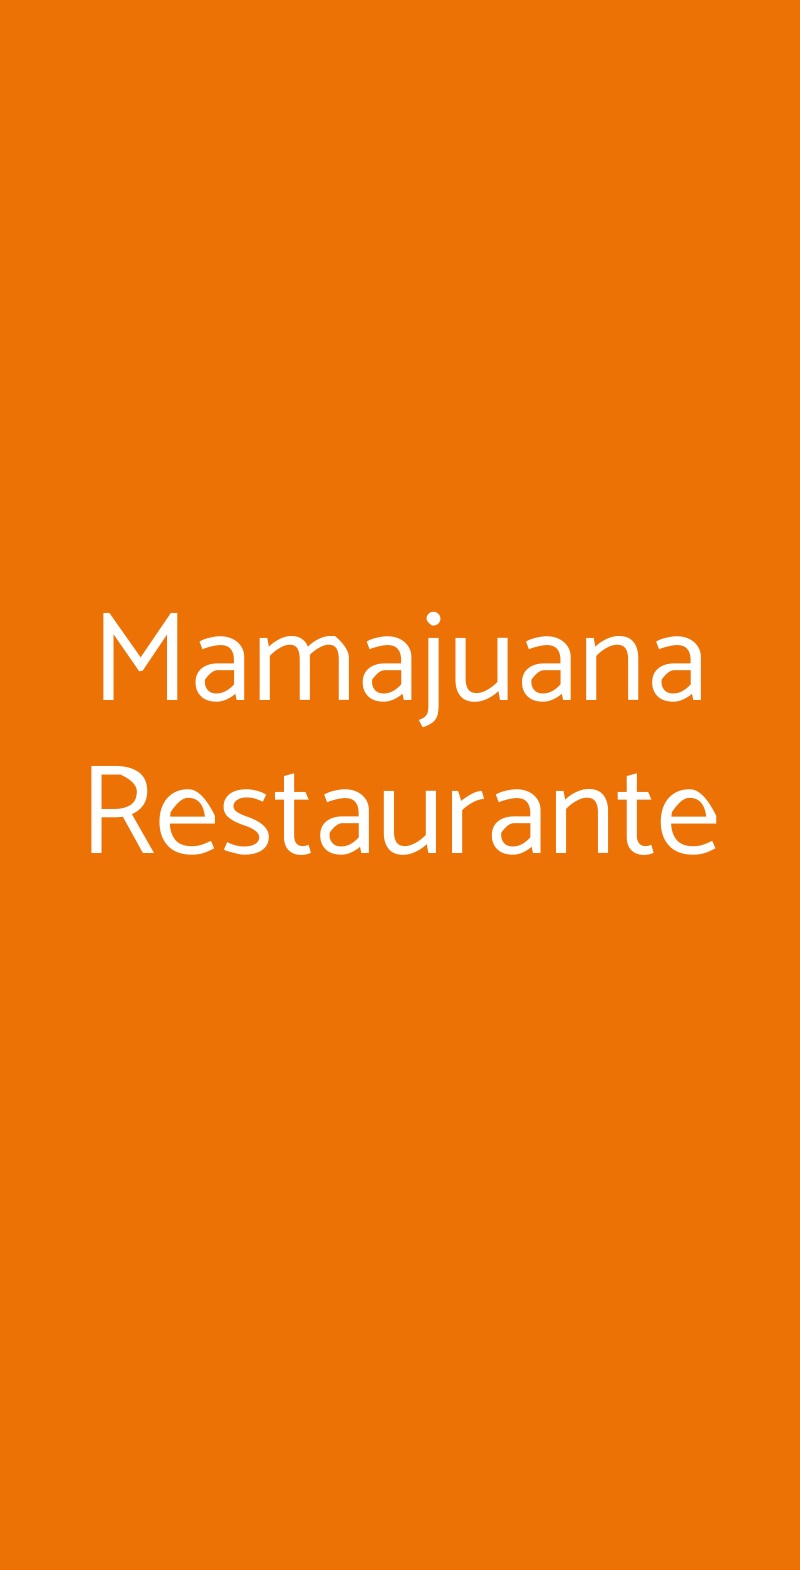 Mamajuana Restaurante Milano menù 1 pagina